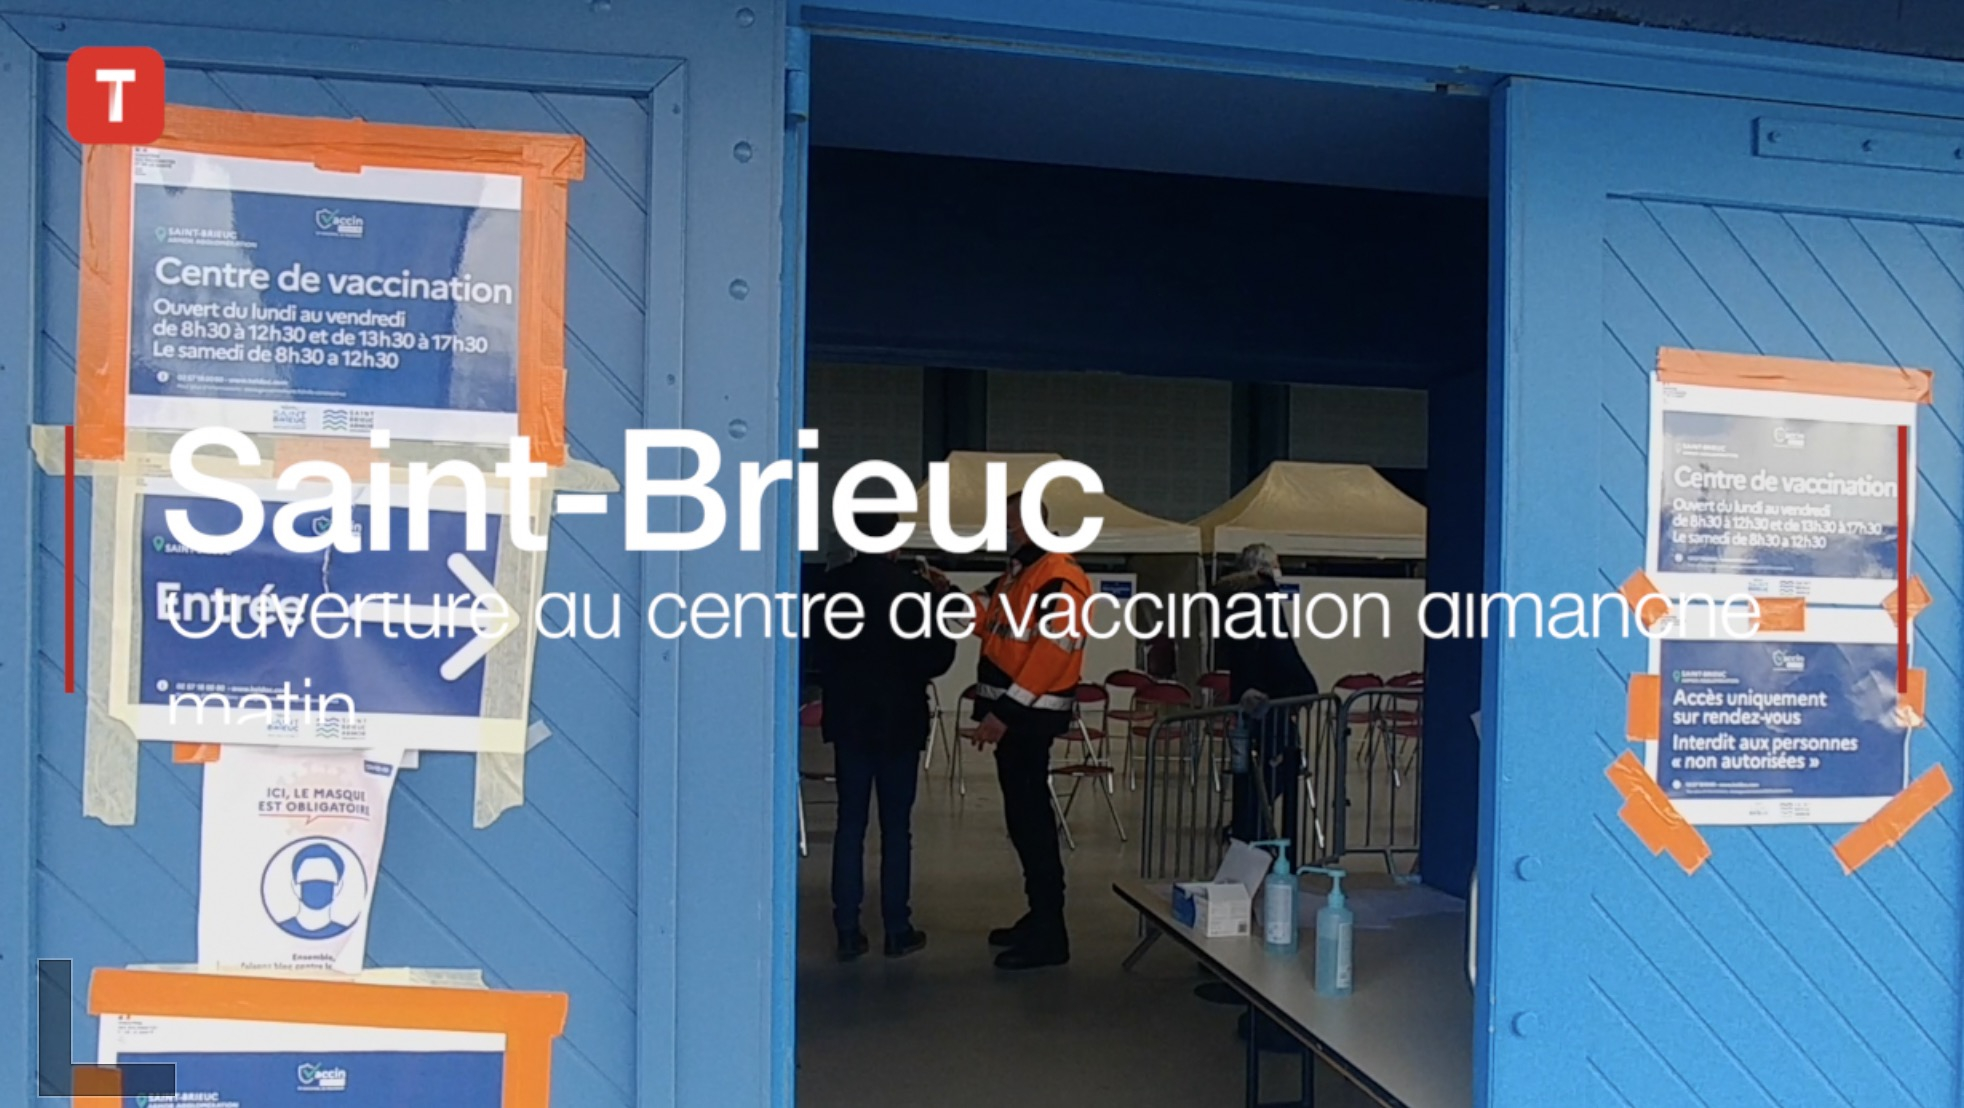 Saint-Brieuc. Ouverture du centre de vaccination ce dimanche matin (Le Télégramme)